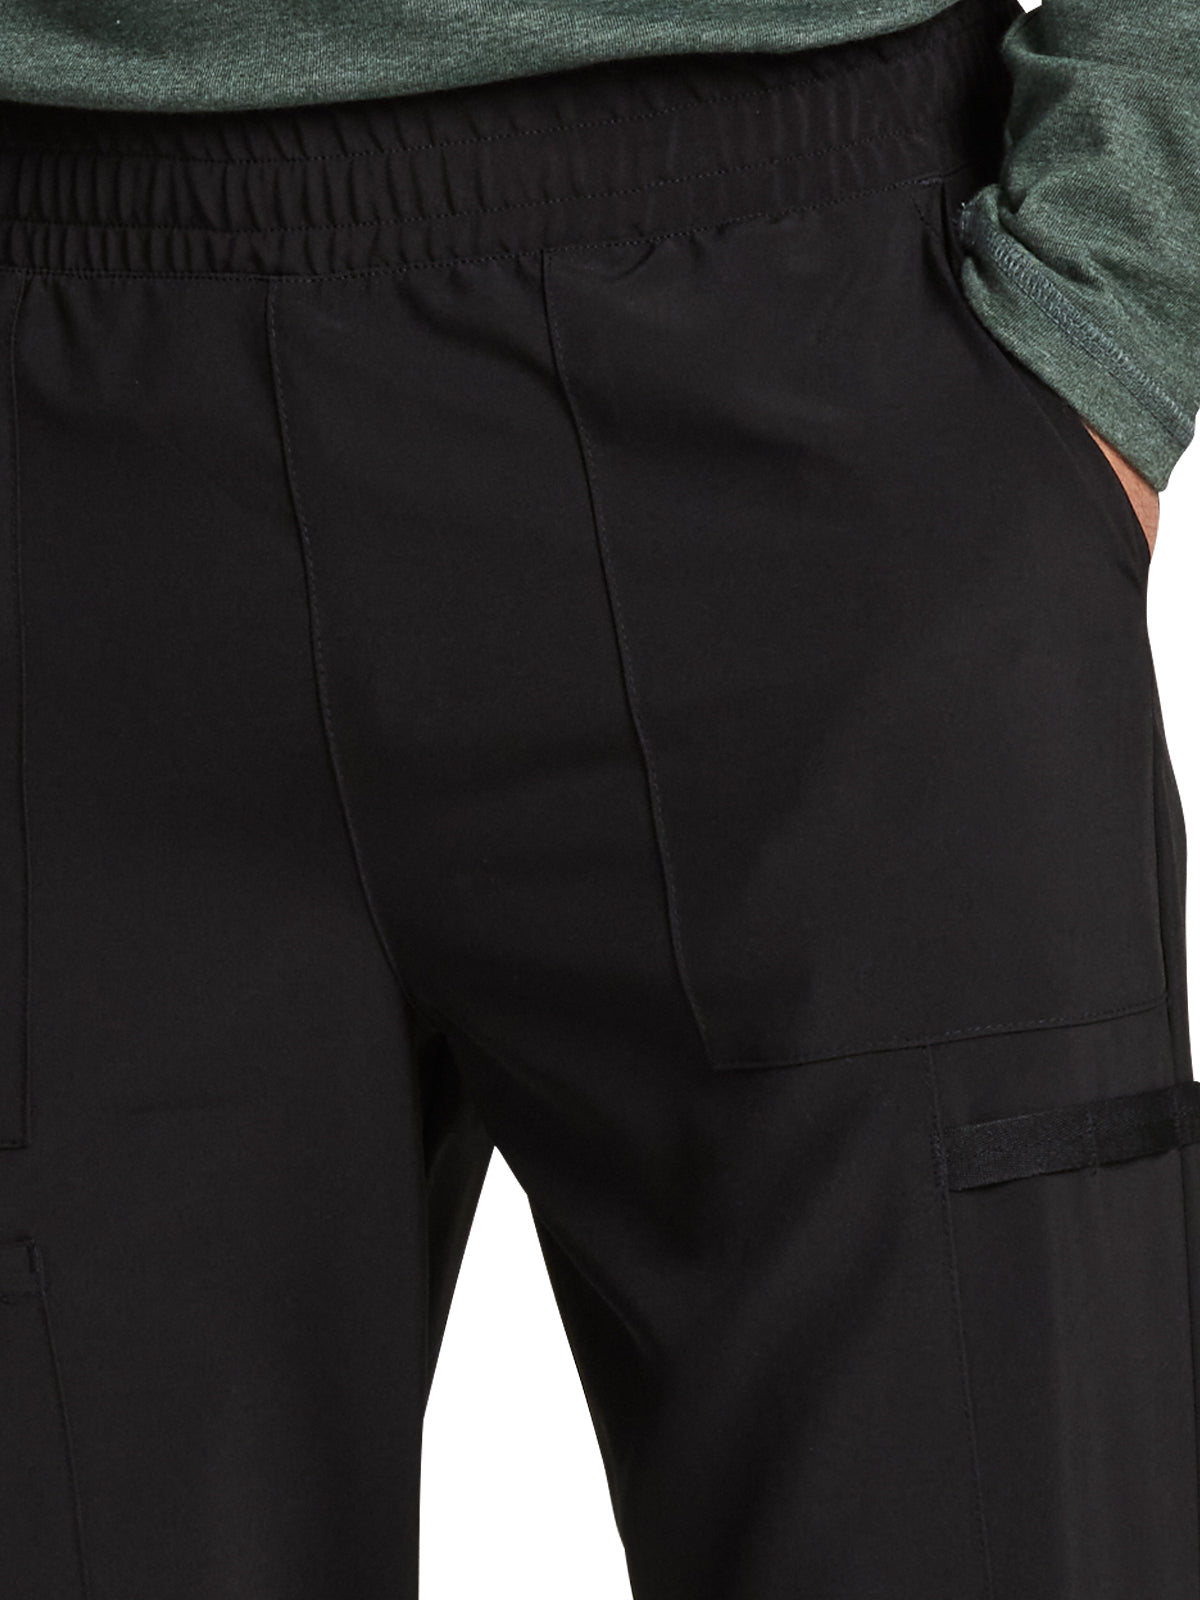 Men's 5-Pocket Mid Rise Jogger Pant - DK223 - Black